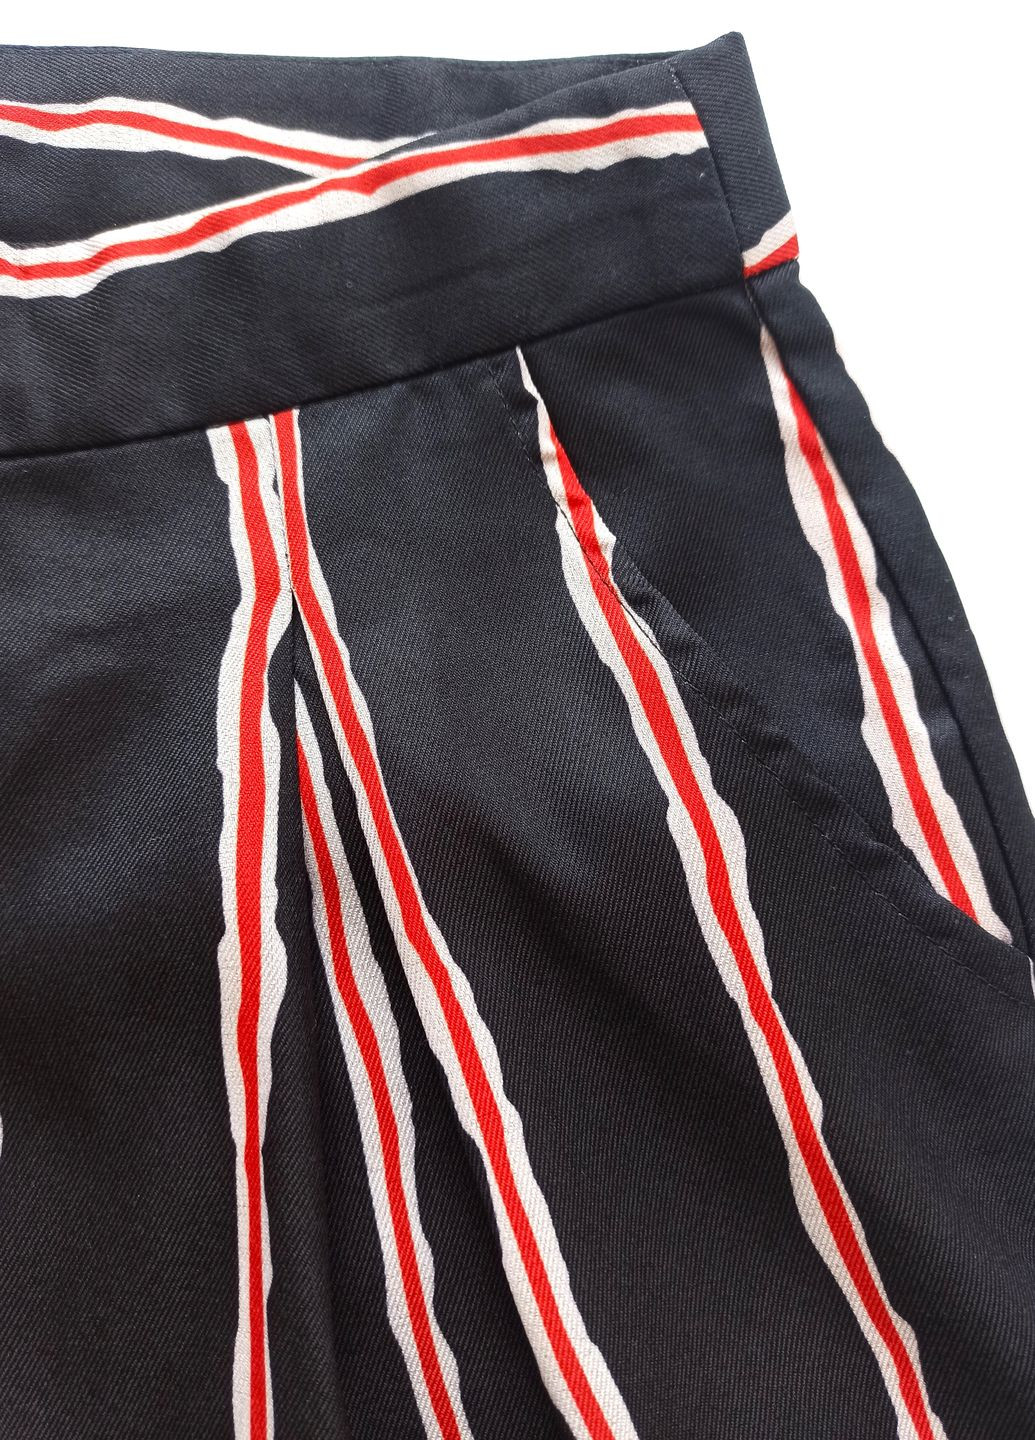 Чорний літній комплект костюм жакет + шорти-бермуди для дівчинки ge650672/616668 чорний полосатий Gaialuna